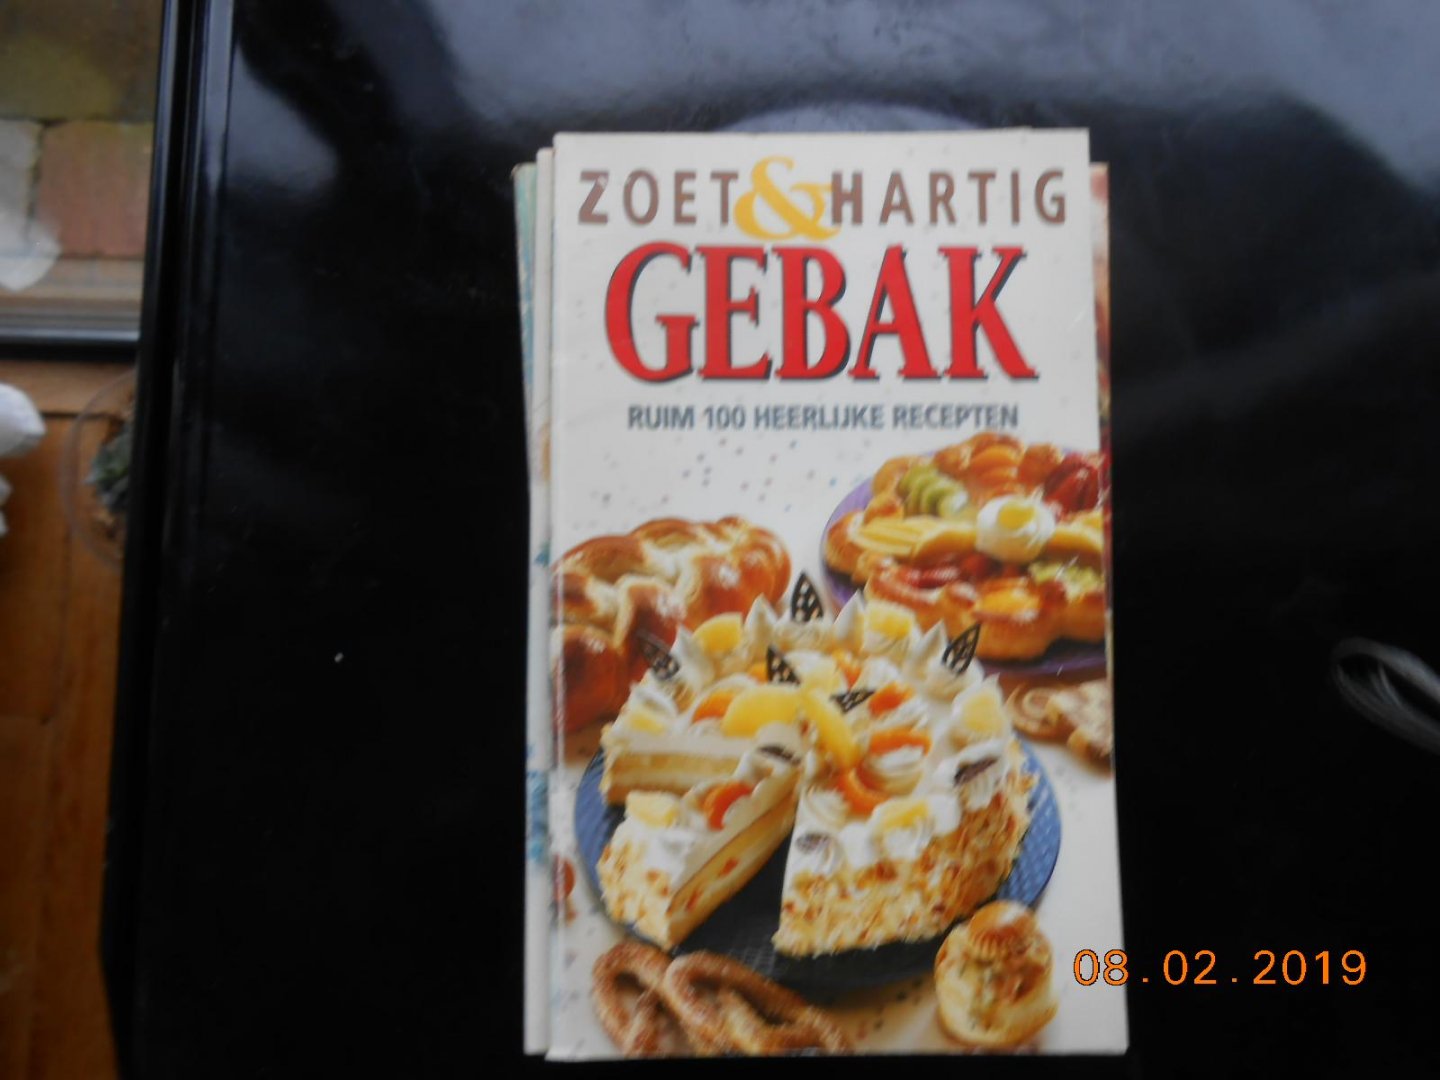  - Zoet & Hartig gebak